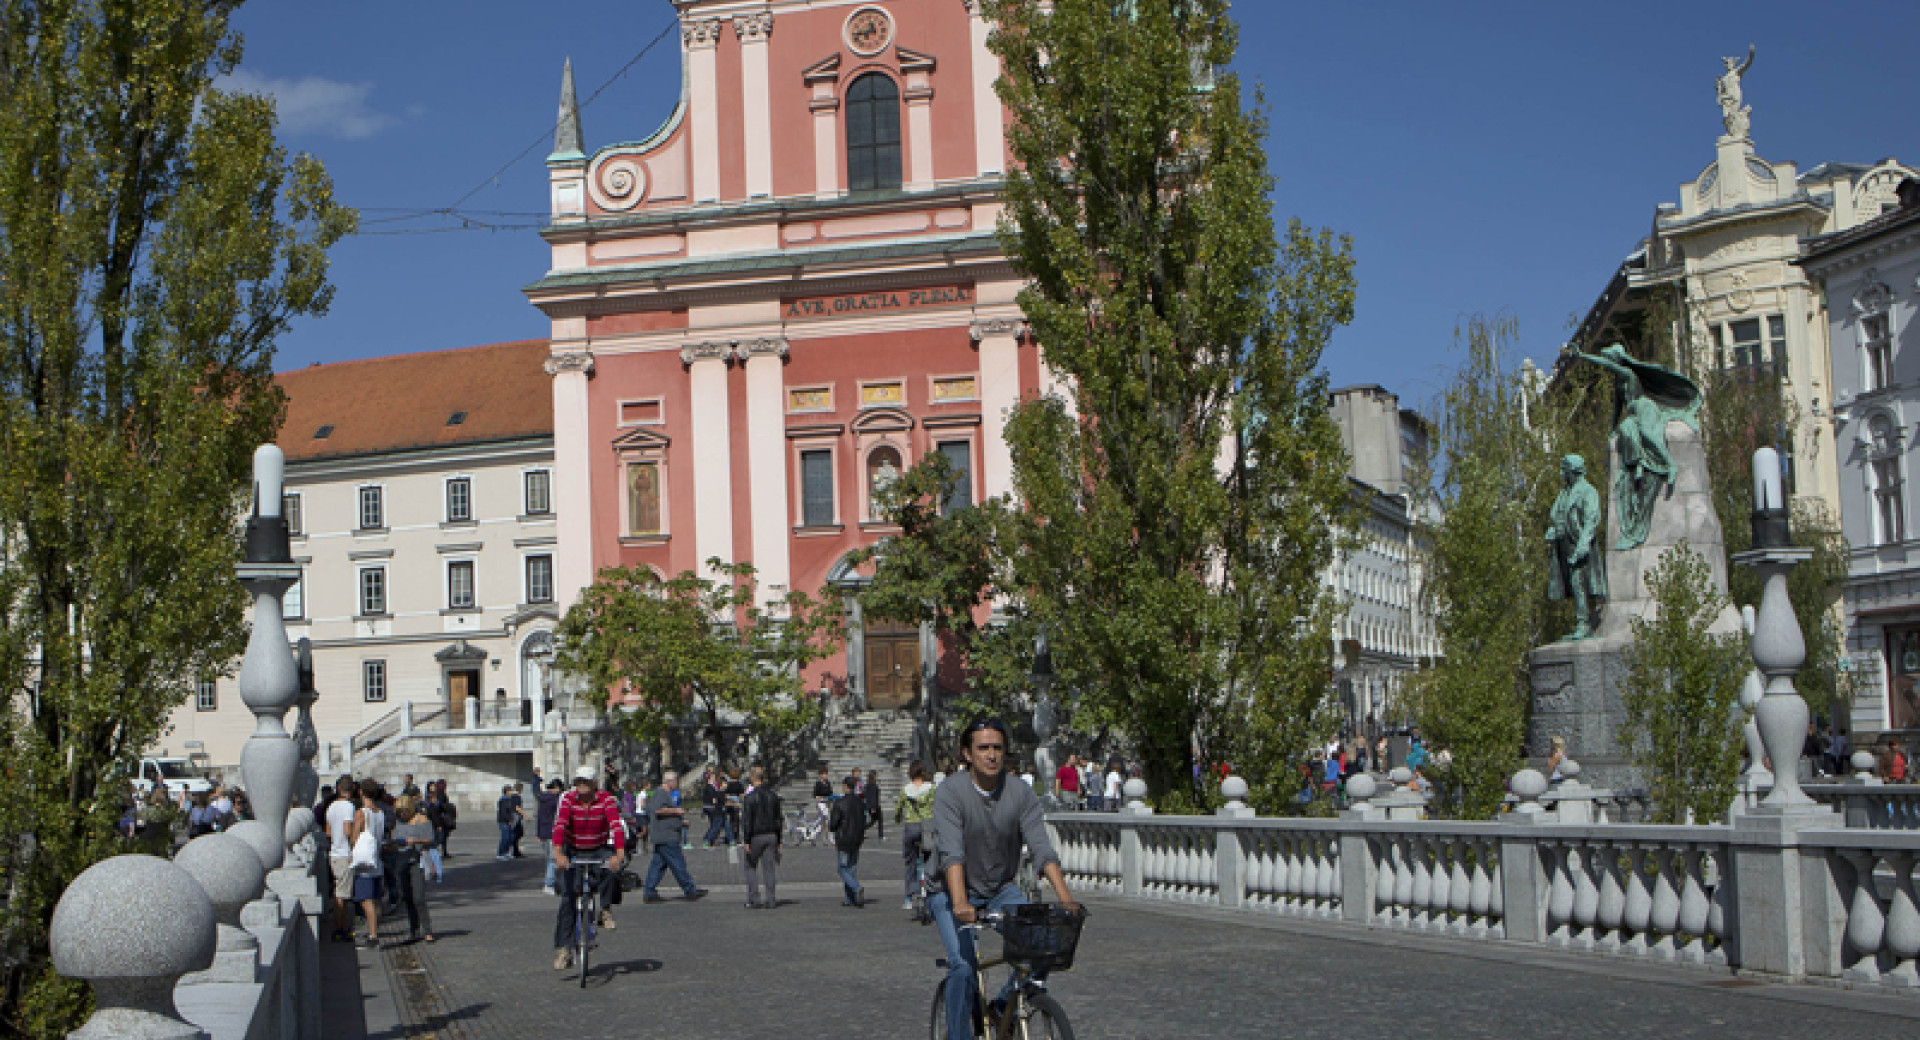 Izbor iz tujih medijev – Ljubljana kot biser zunaj evropskega dosega radarjev